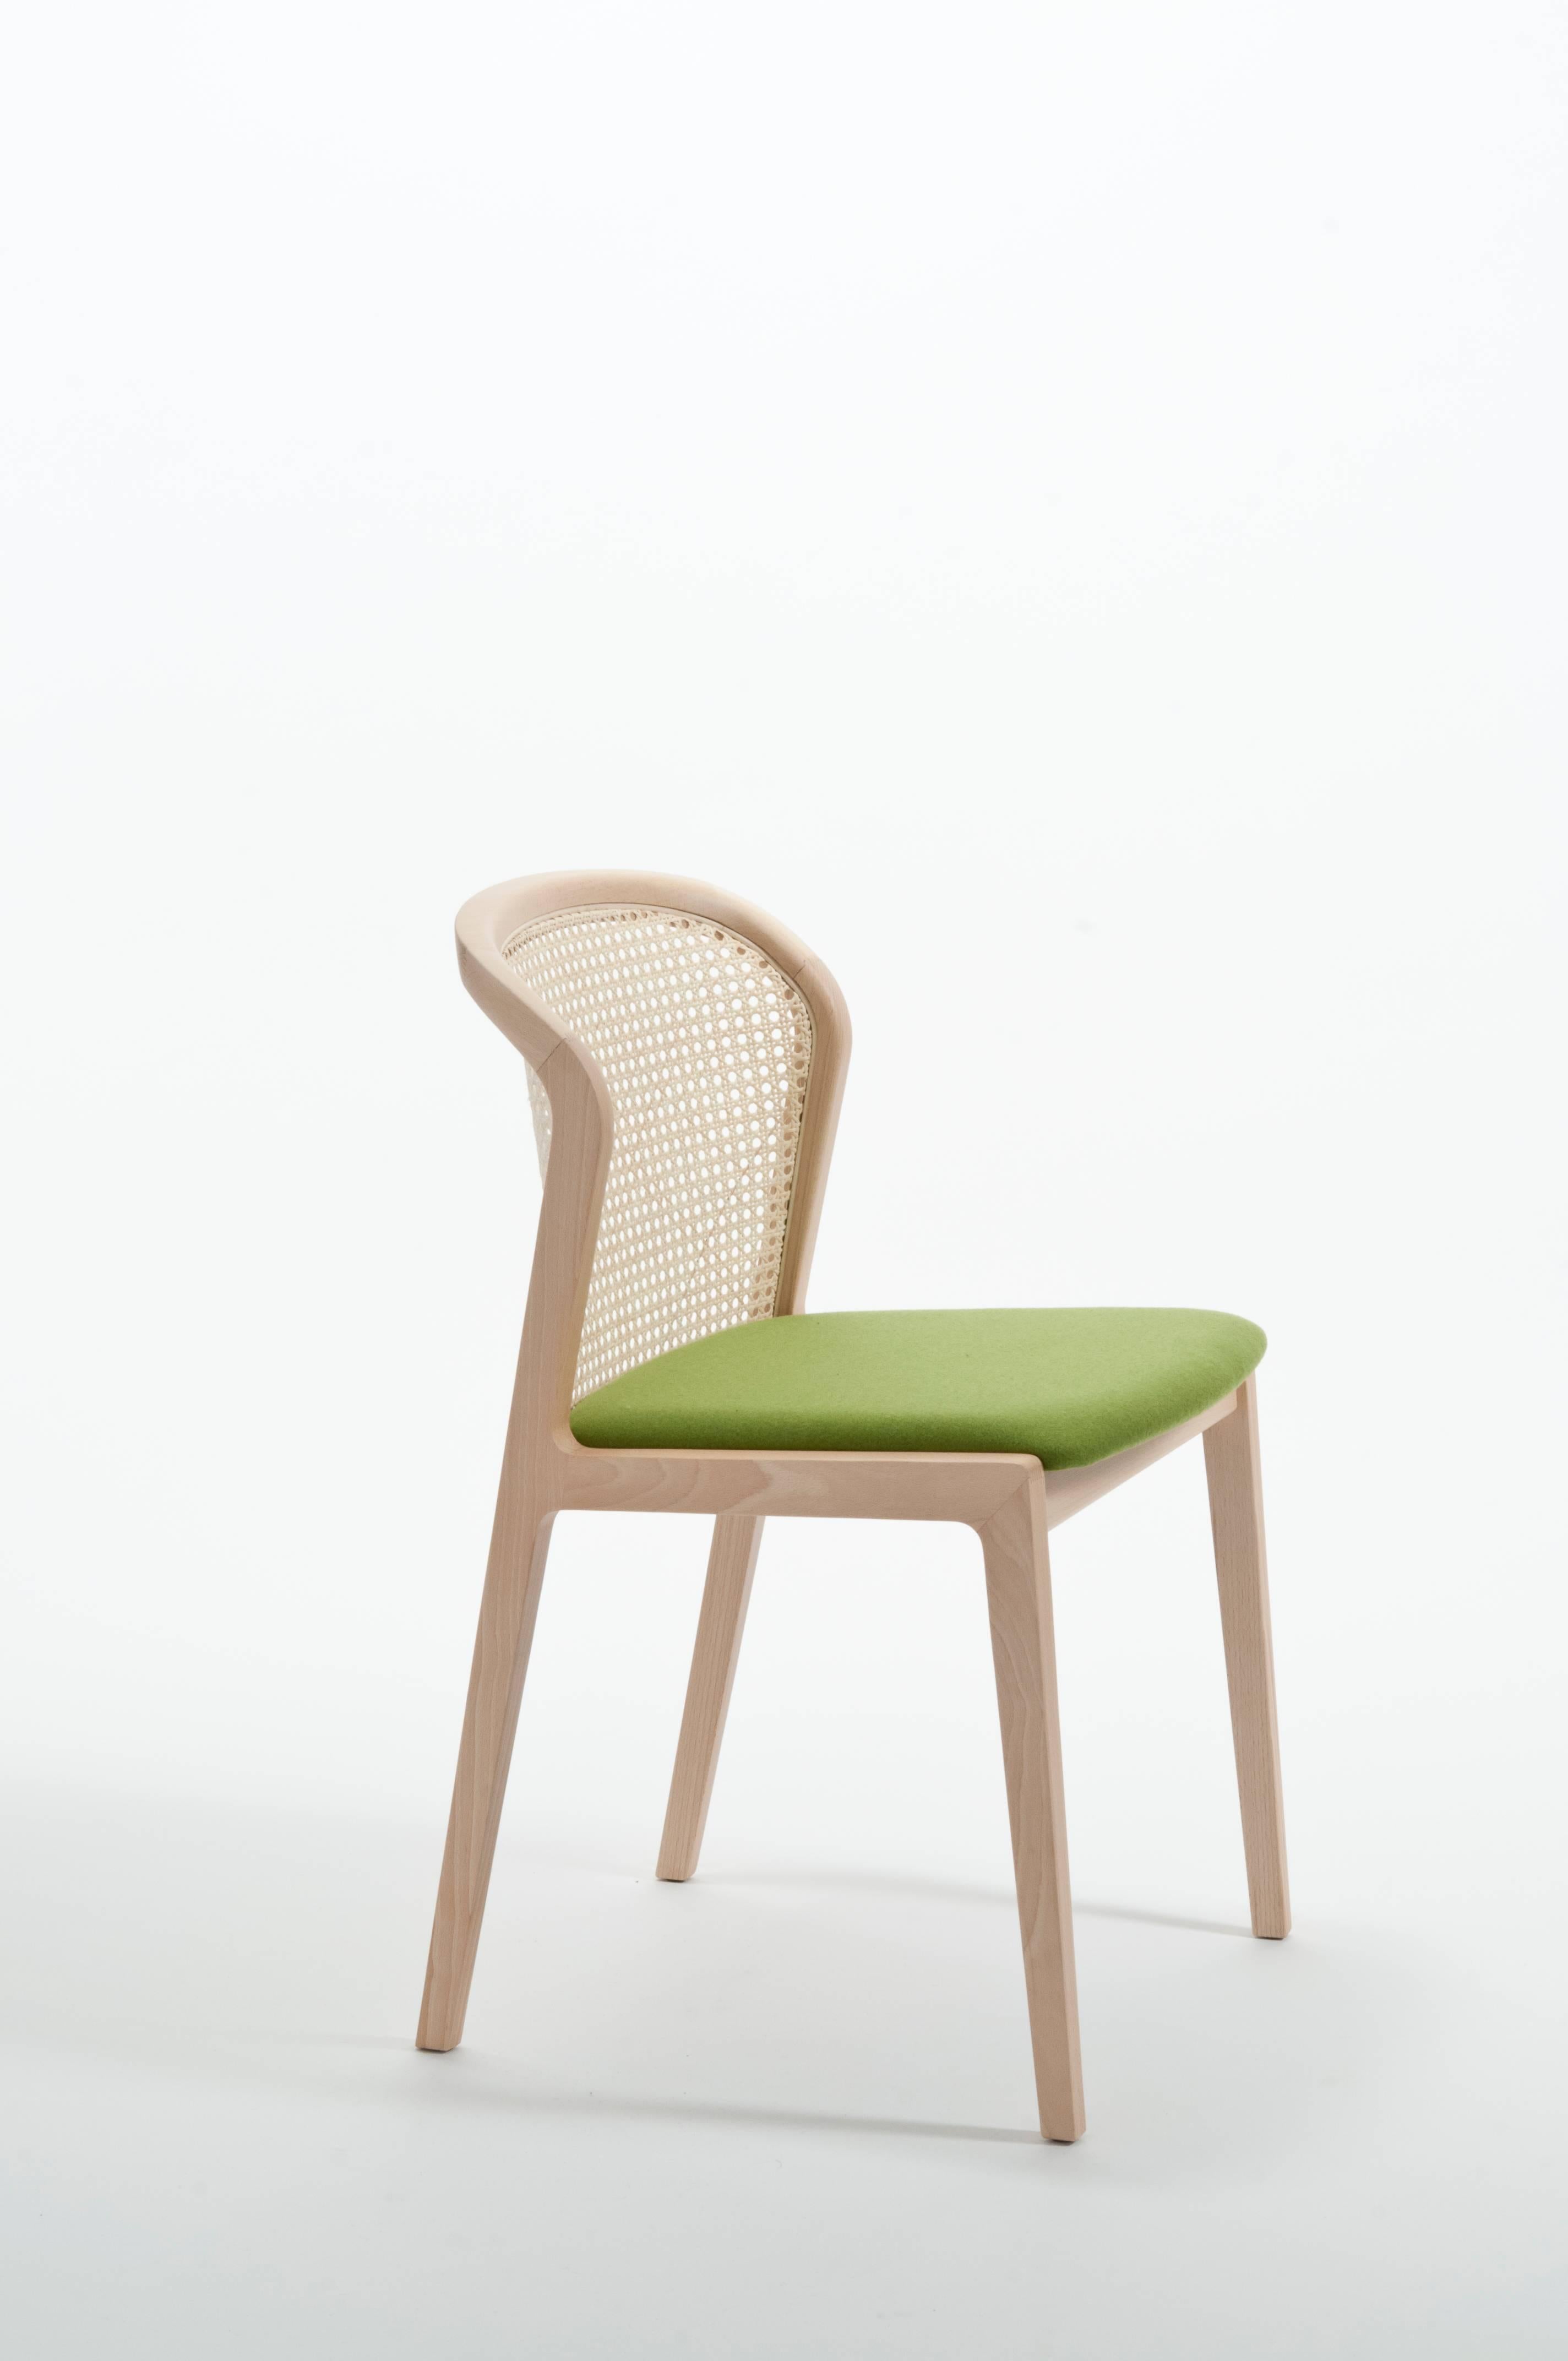 Vienna ist ein außergewöhnlich komfortabler und eleganter Stuhl, entworfen von Emmanuel Gallina, der gerne Brancusi zitiert, wenn er sagt, dass 